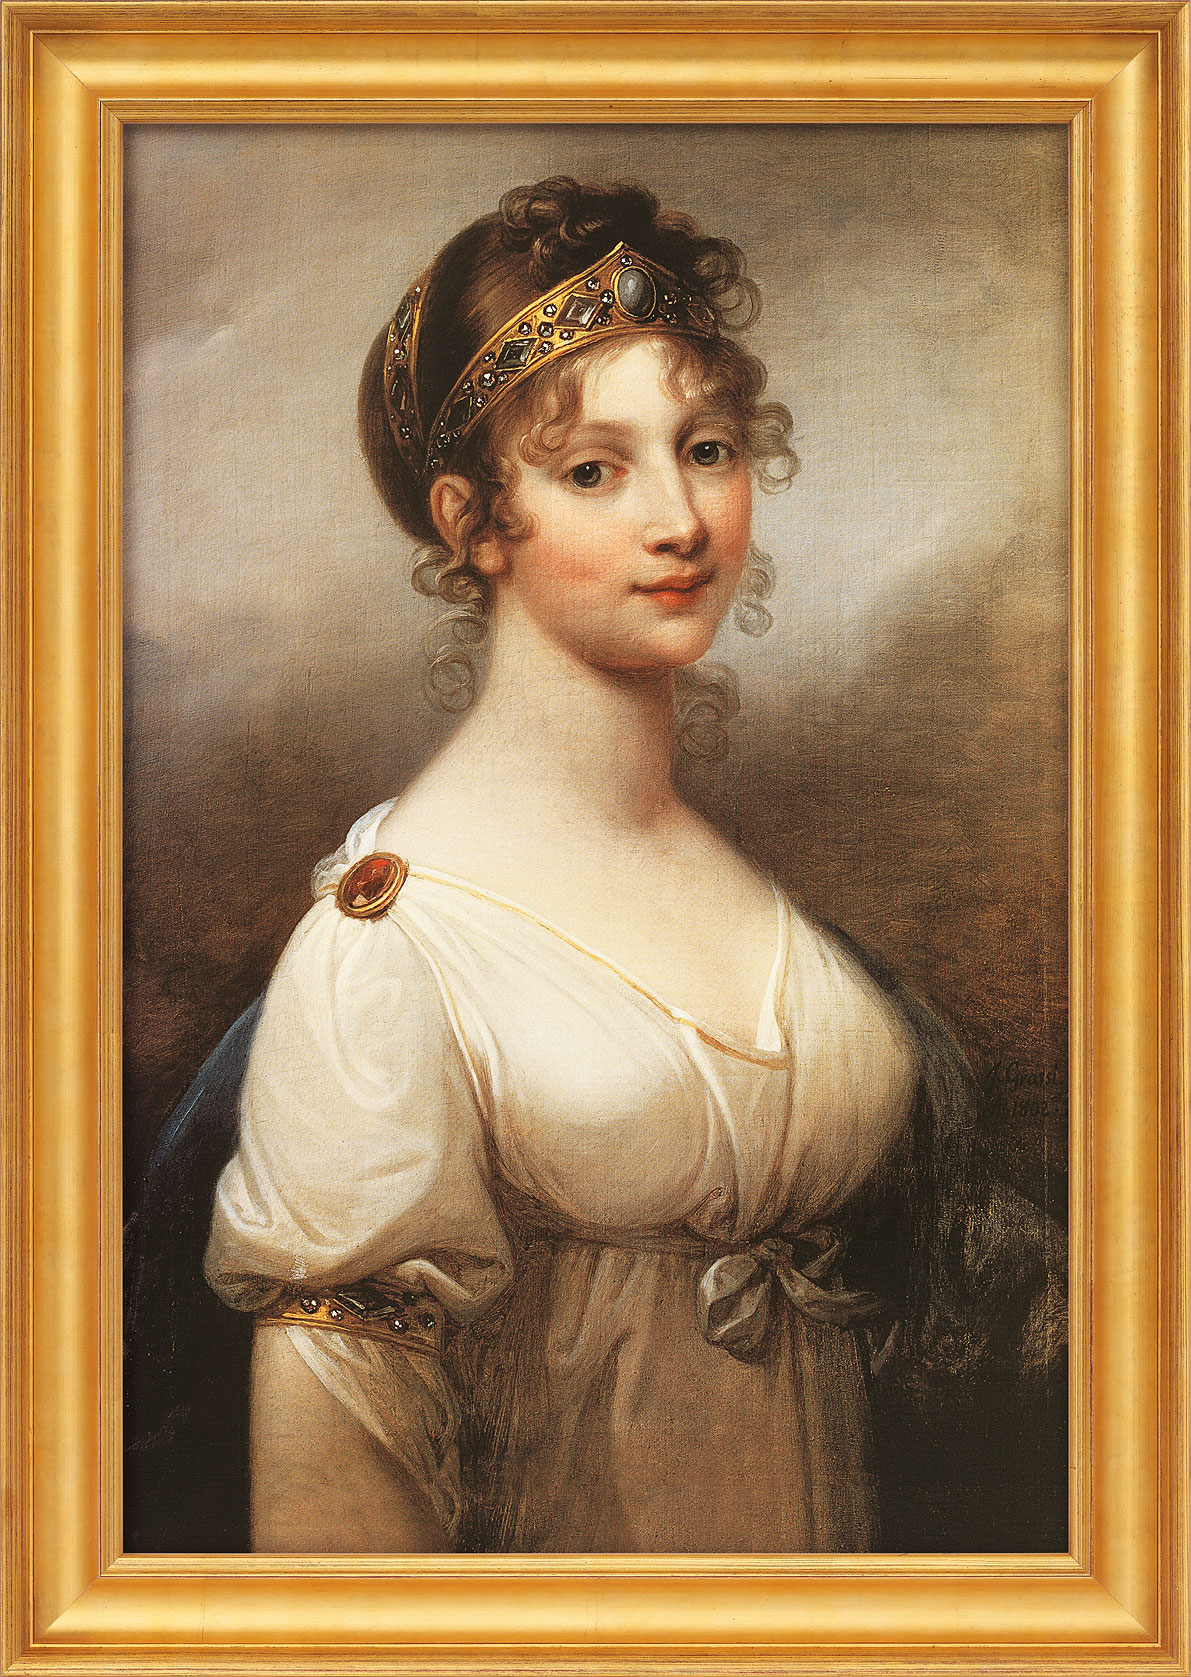 Joseph Grassi: Bild 'Luise, Königin von Preußen' (1802), gerahmt